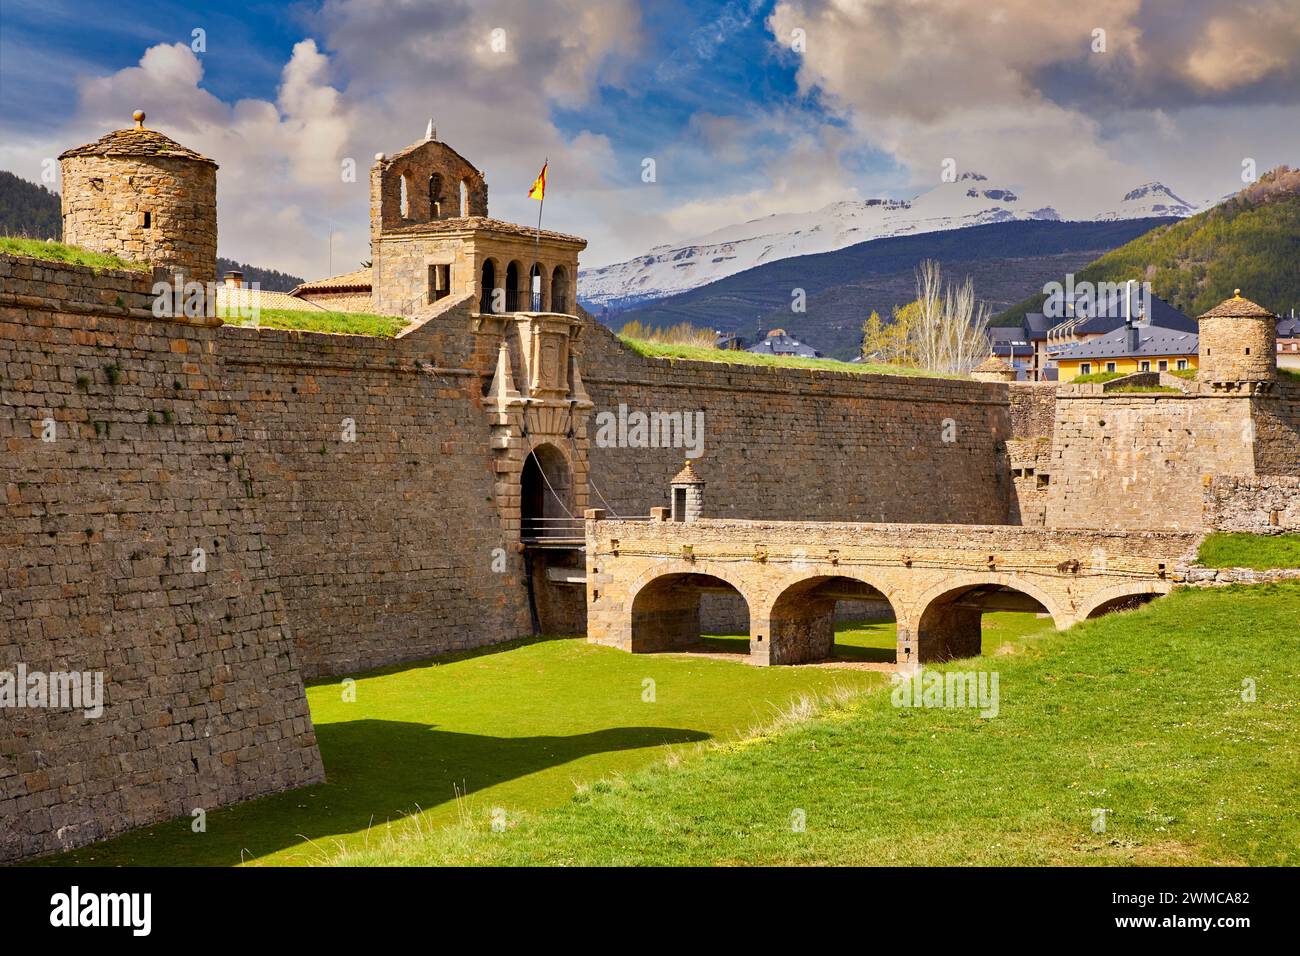 La Ciudadela, citadelle, Château de St Peter, Jaca, Huesca, Aragón, Espagne province, Europe Banque D'Images